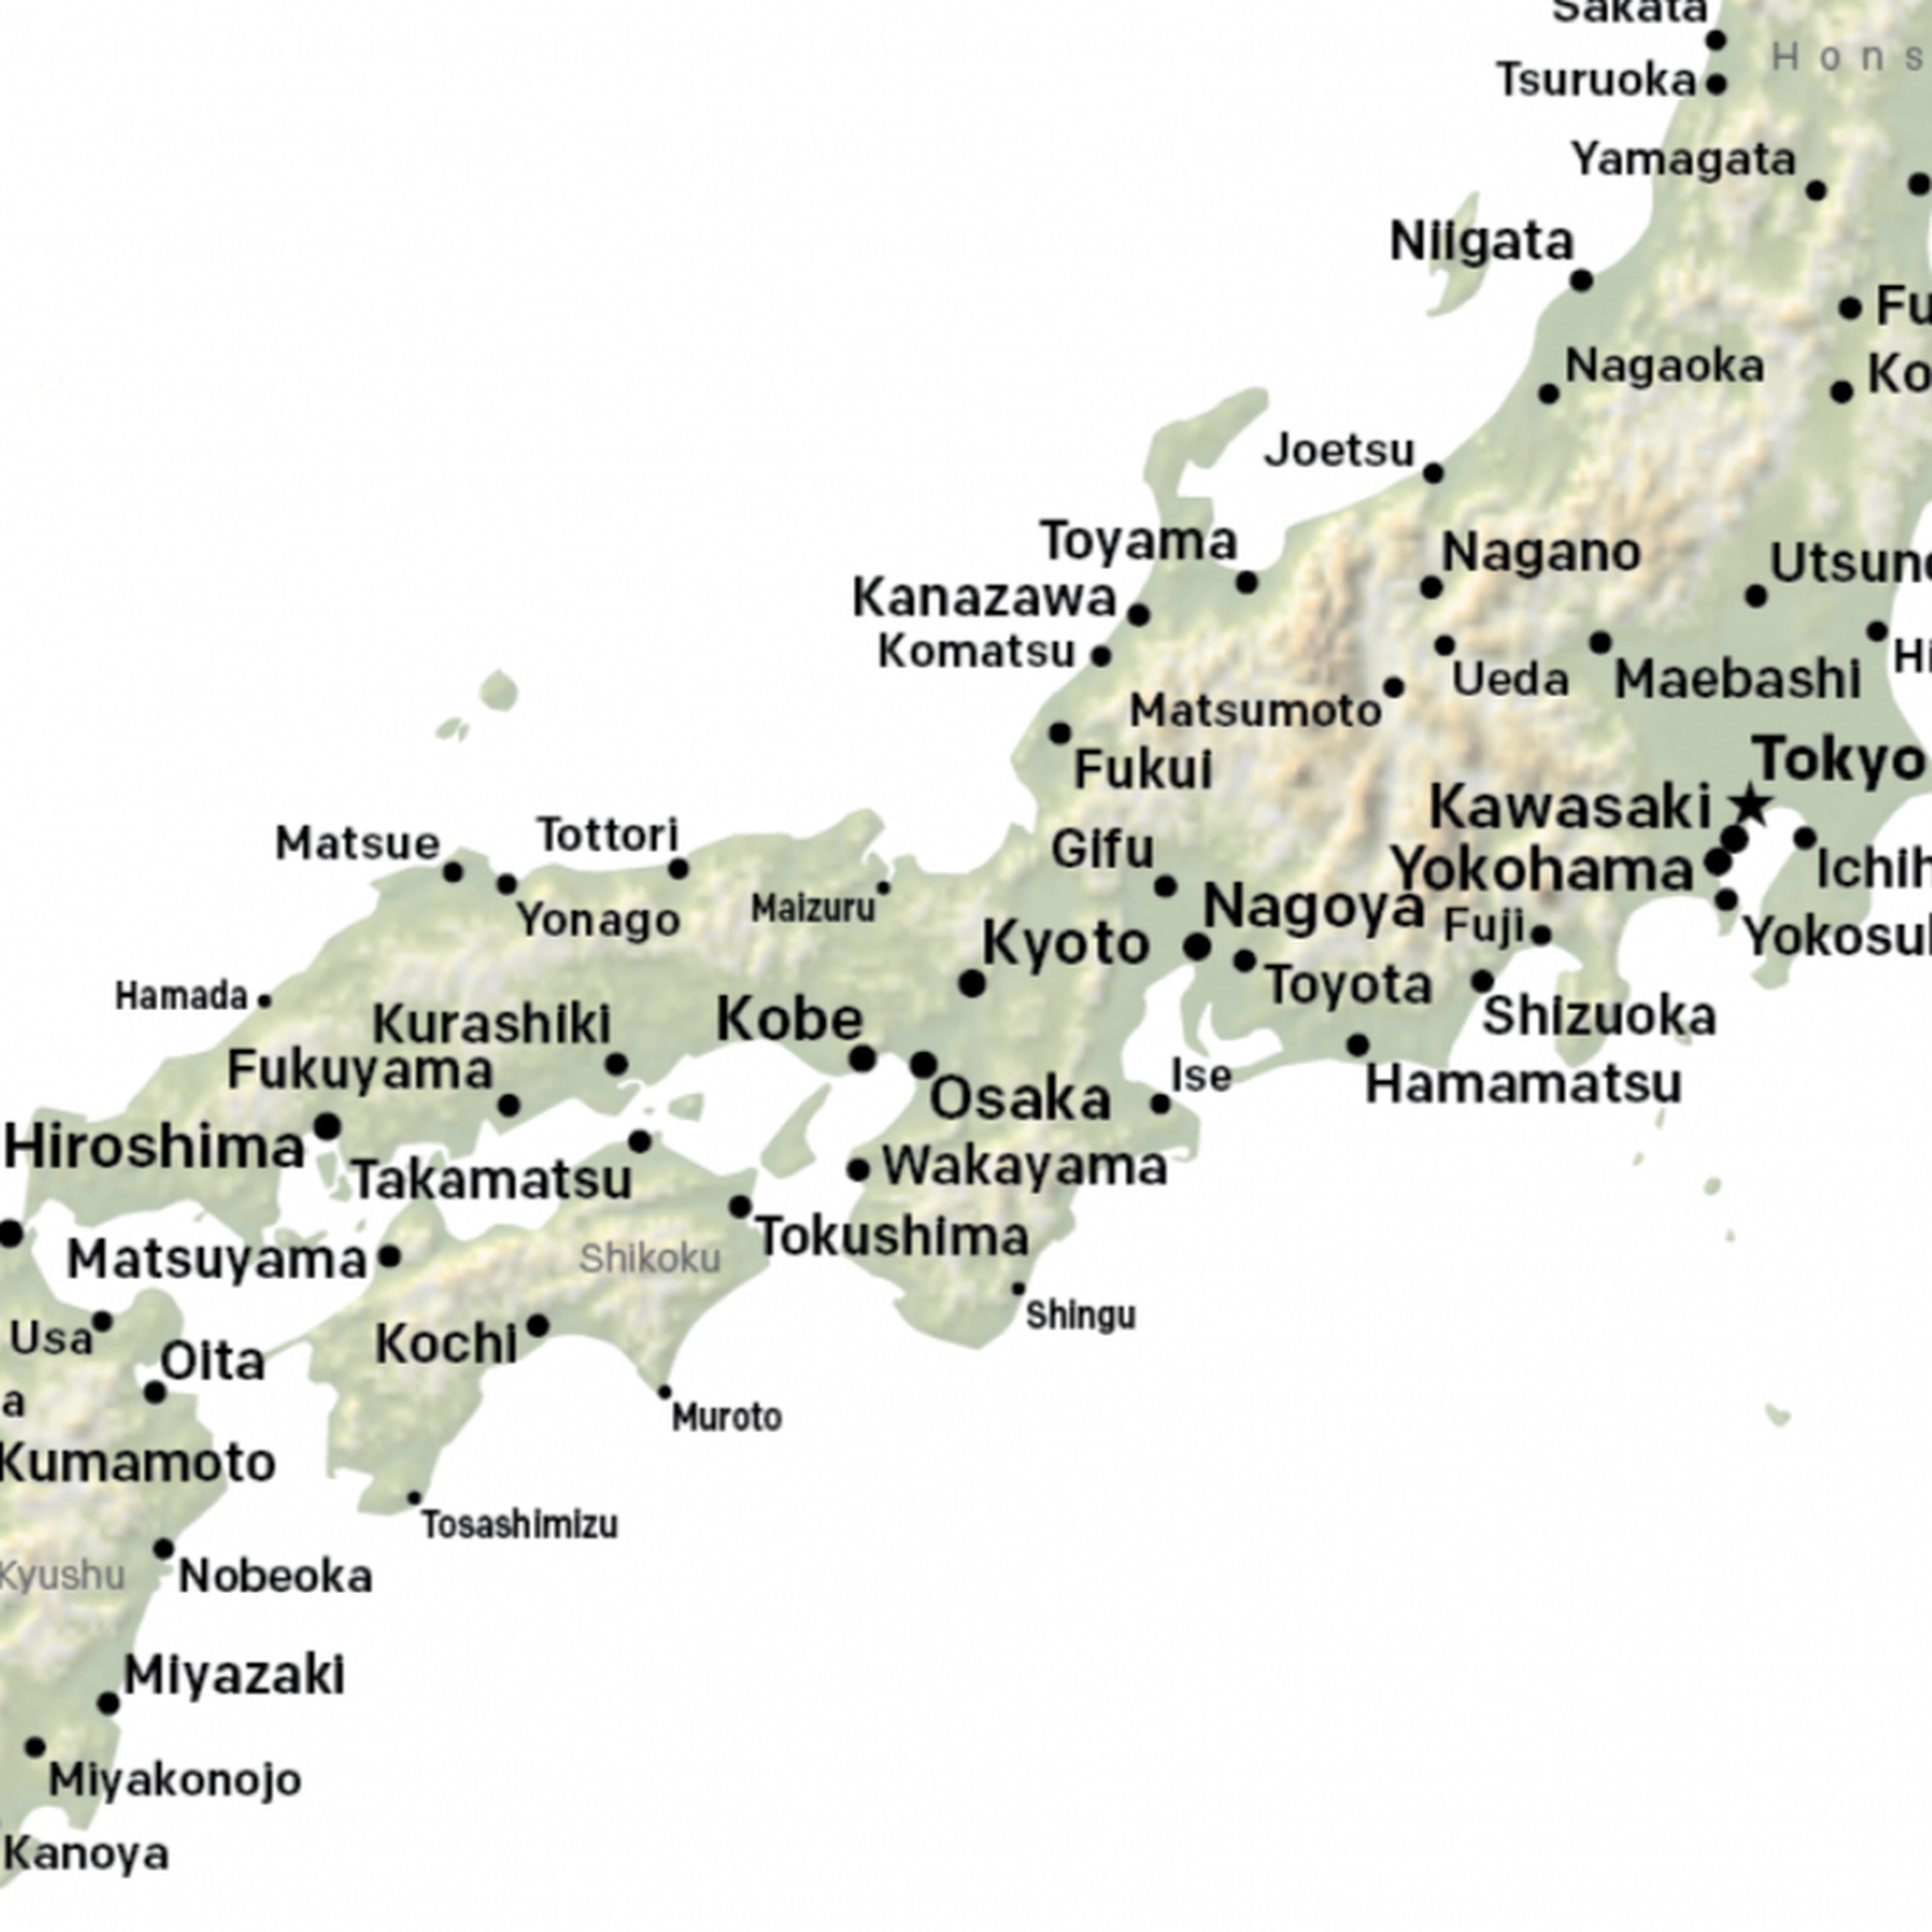 Japan - Honshu (south)